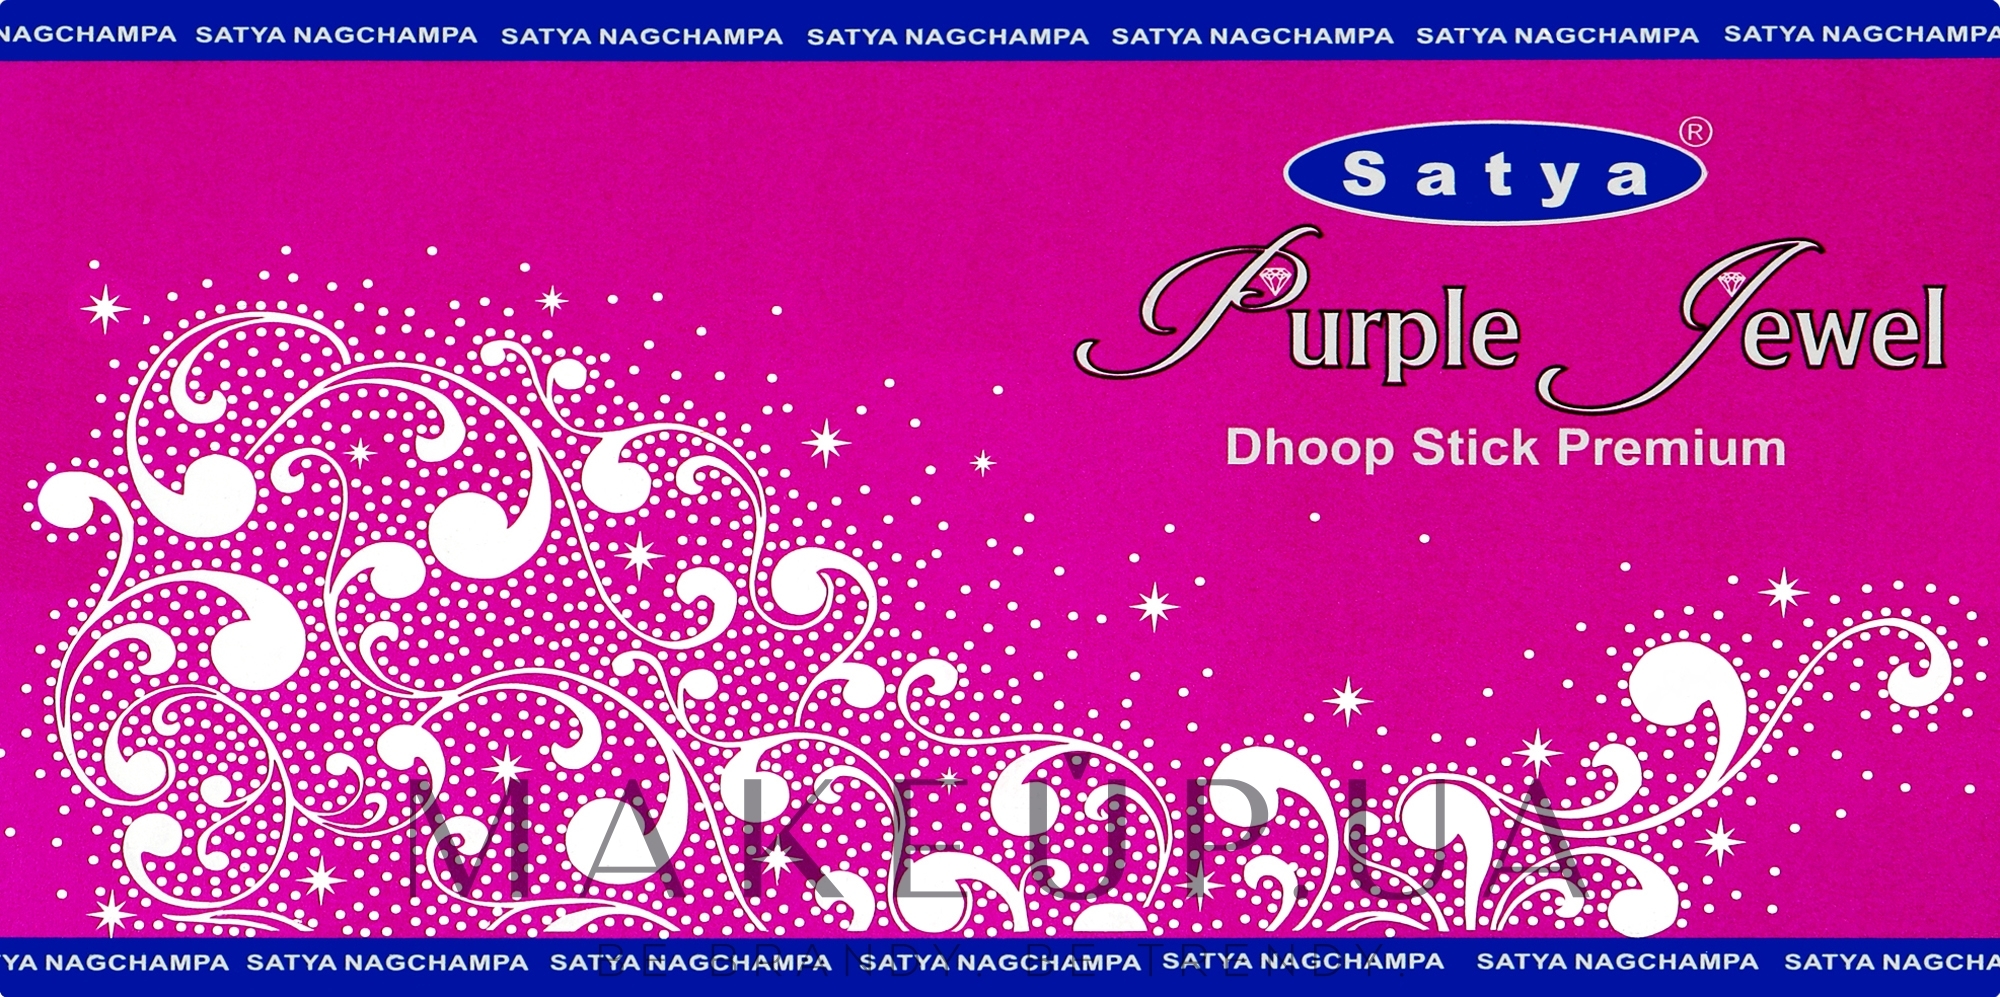 Пахощі палички "Фіолетовий дорогоцінний камінь" - Satya Purple Jewel Dhoop Sticks Premium — фото 20шт